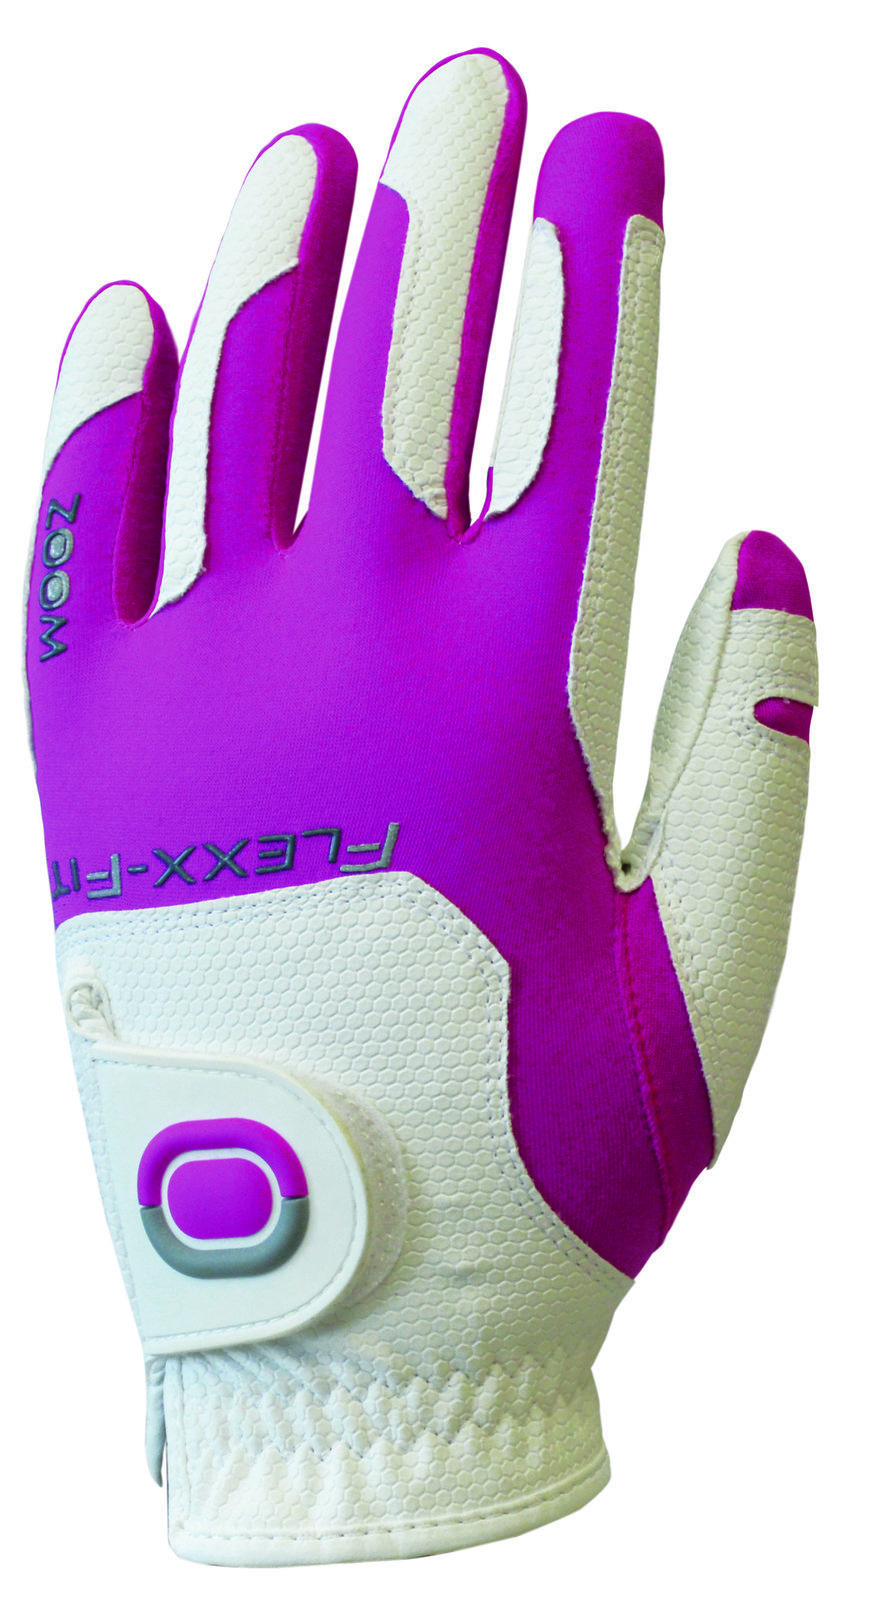 Gloves Zoom Gloves Weather Junior Golf Glove White/Fuchsia LH